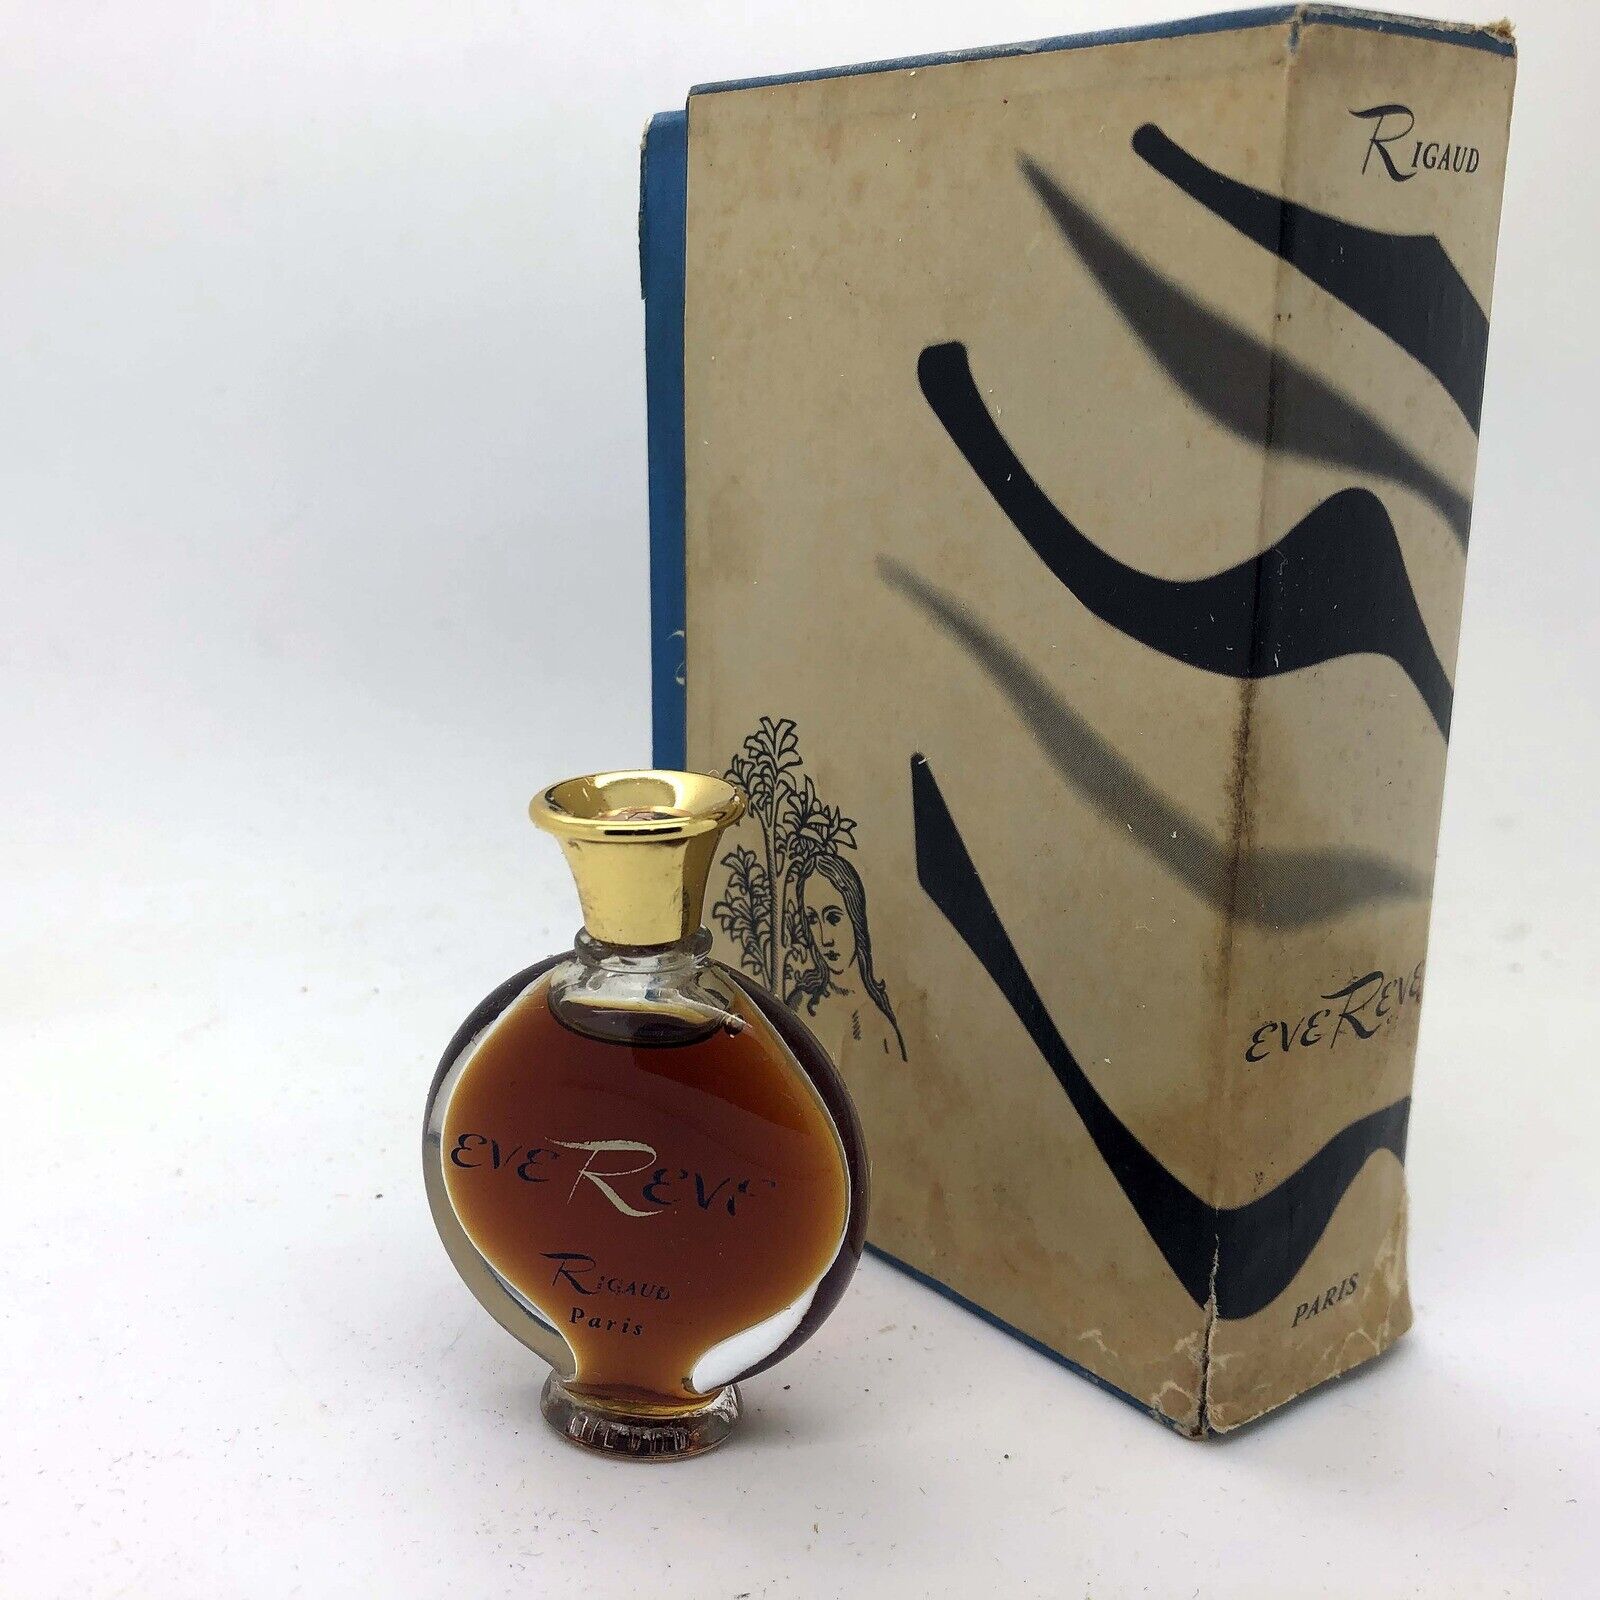 VINTAGE 1970's Rigaud Eve Reve ¼ oz Perfume Parfum extrait lalique